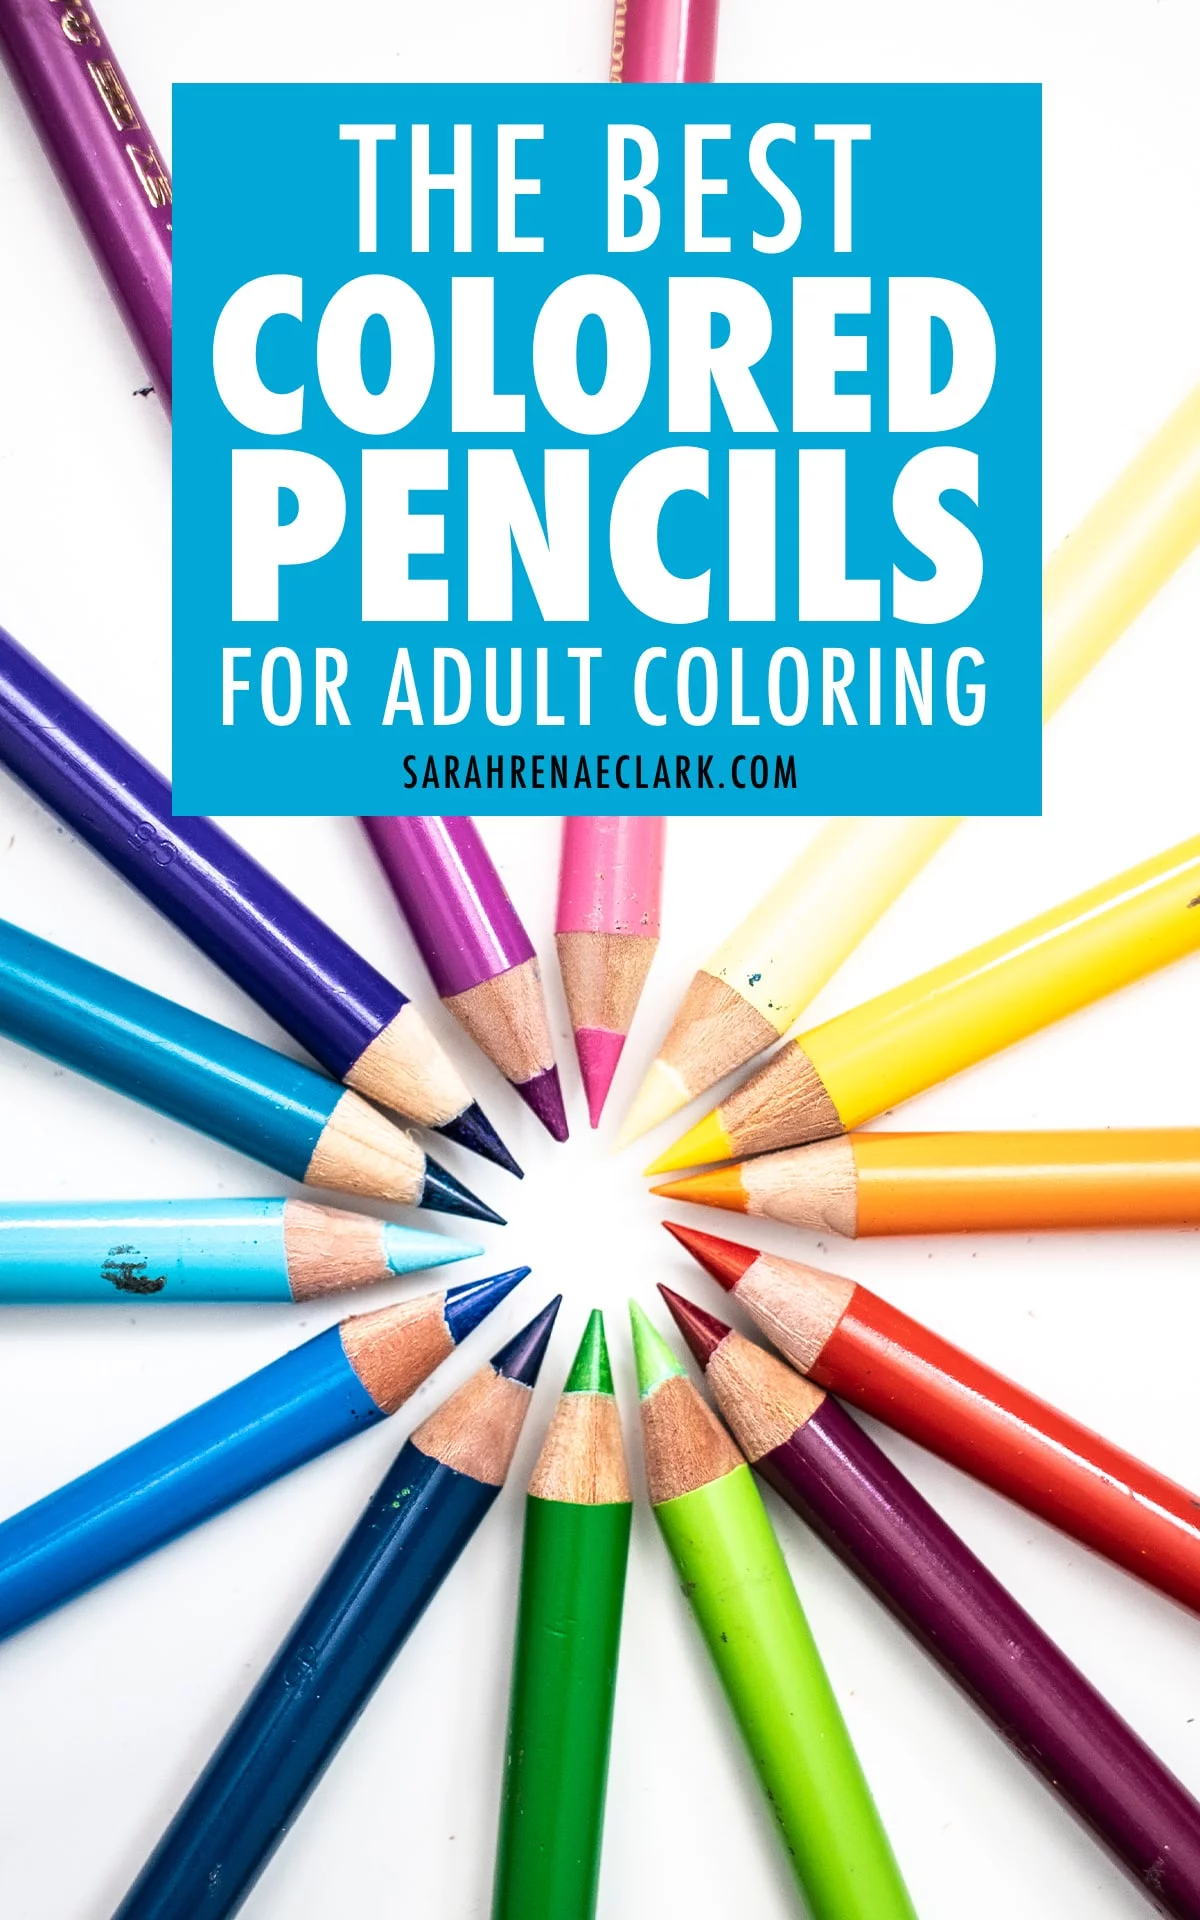 https://sarahrenaeclark.com/wp-content/uploads/2021/01/best-colored-pencils-05-169.jpg.webp